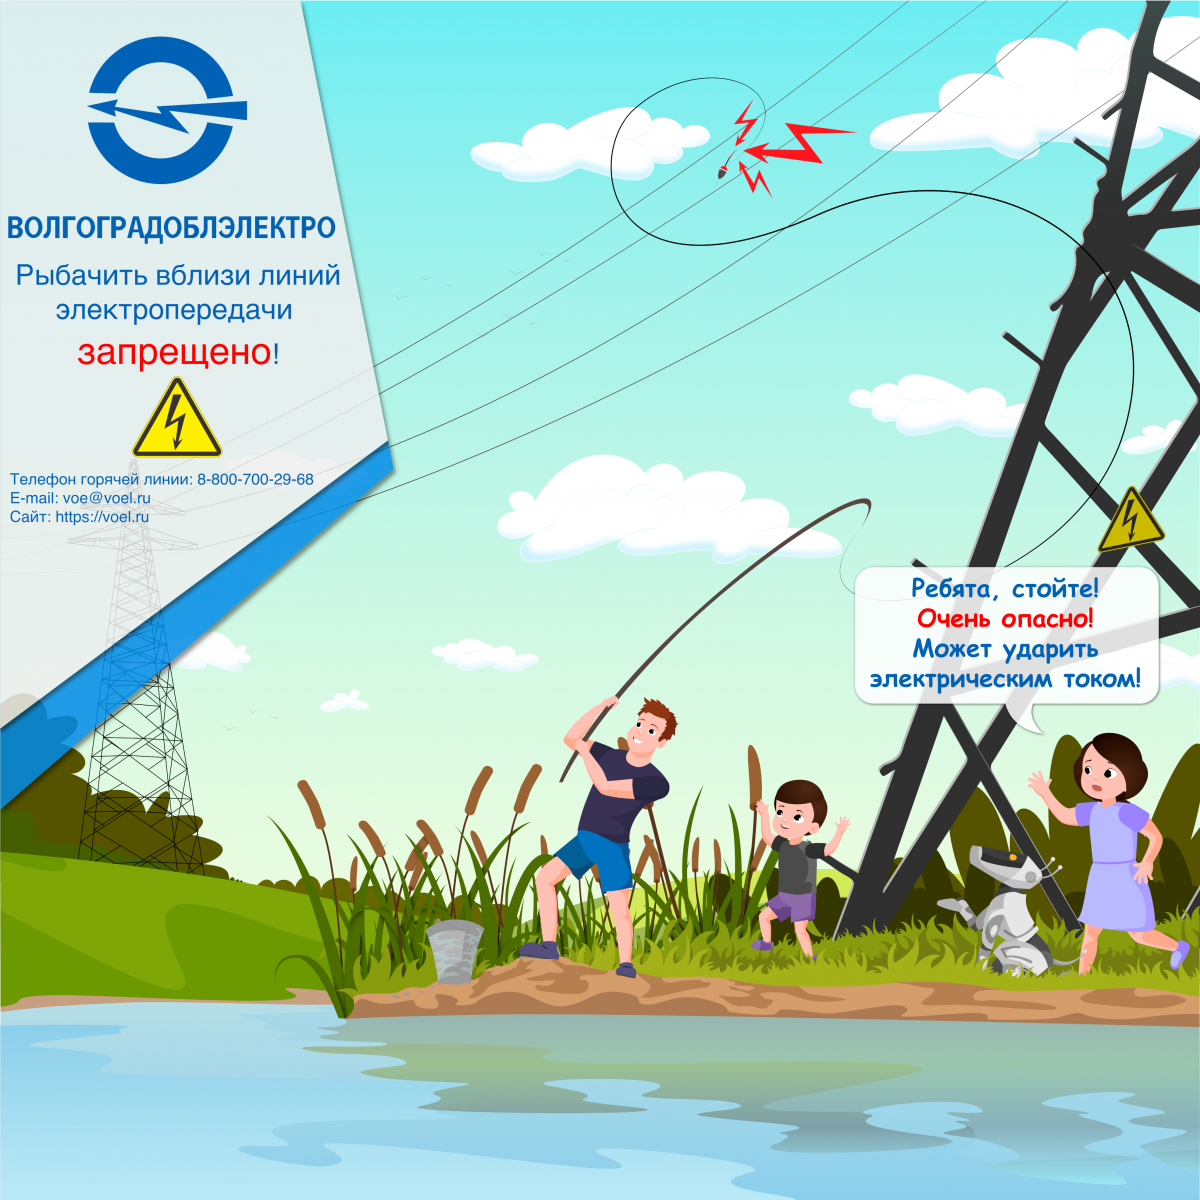 Рыбачить вблизи линий электропередачи запрещено! 